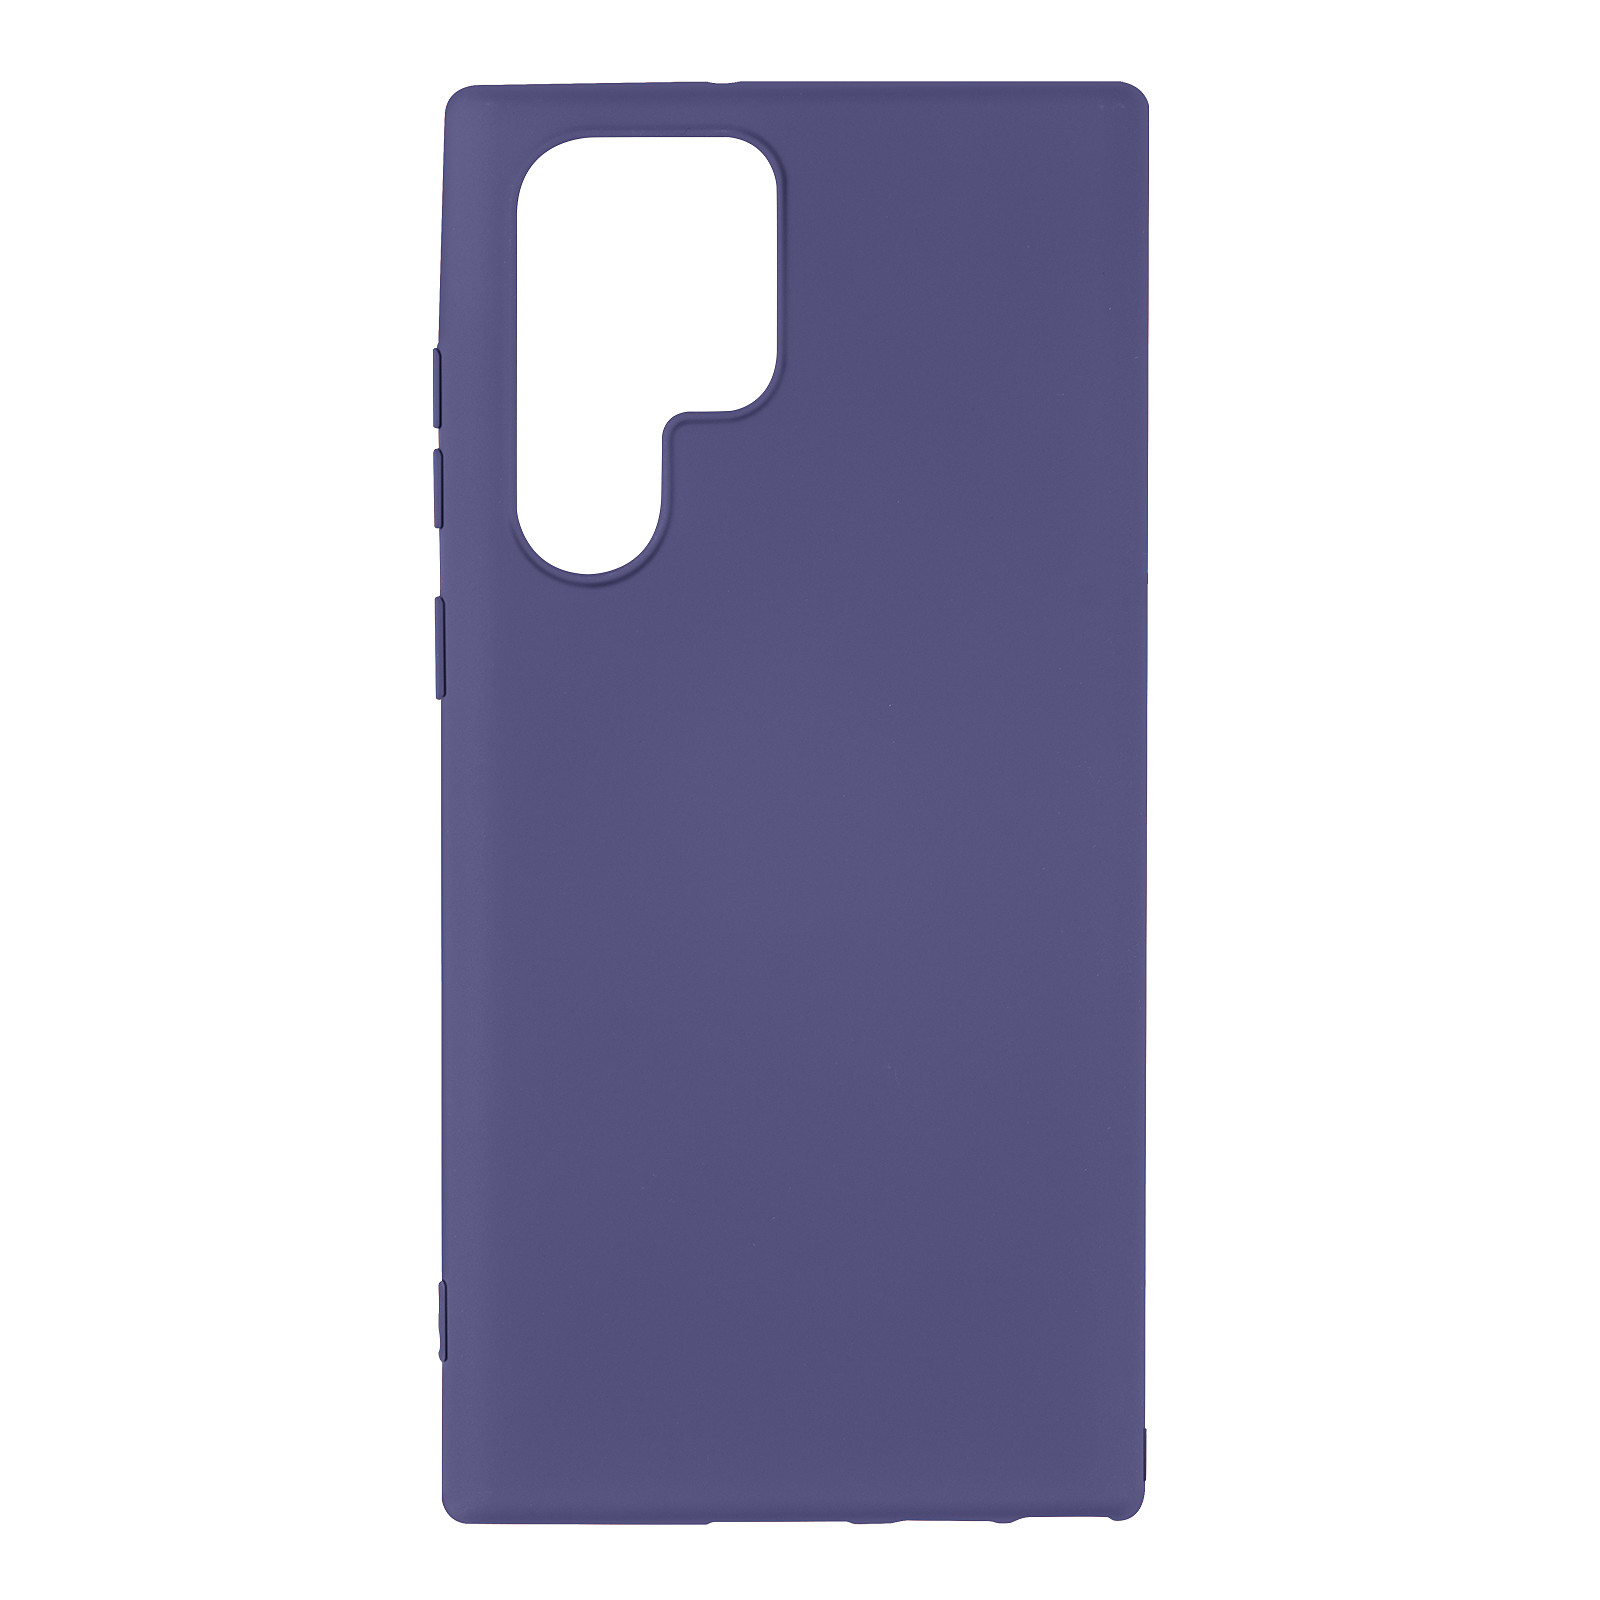 Avizar Coque pour Samsung Galaxy S22 Ultra Silicone Semi-rigide Finition Soft-touch Fine Violet - Coque telephone Avizar